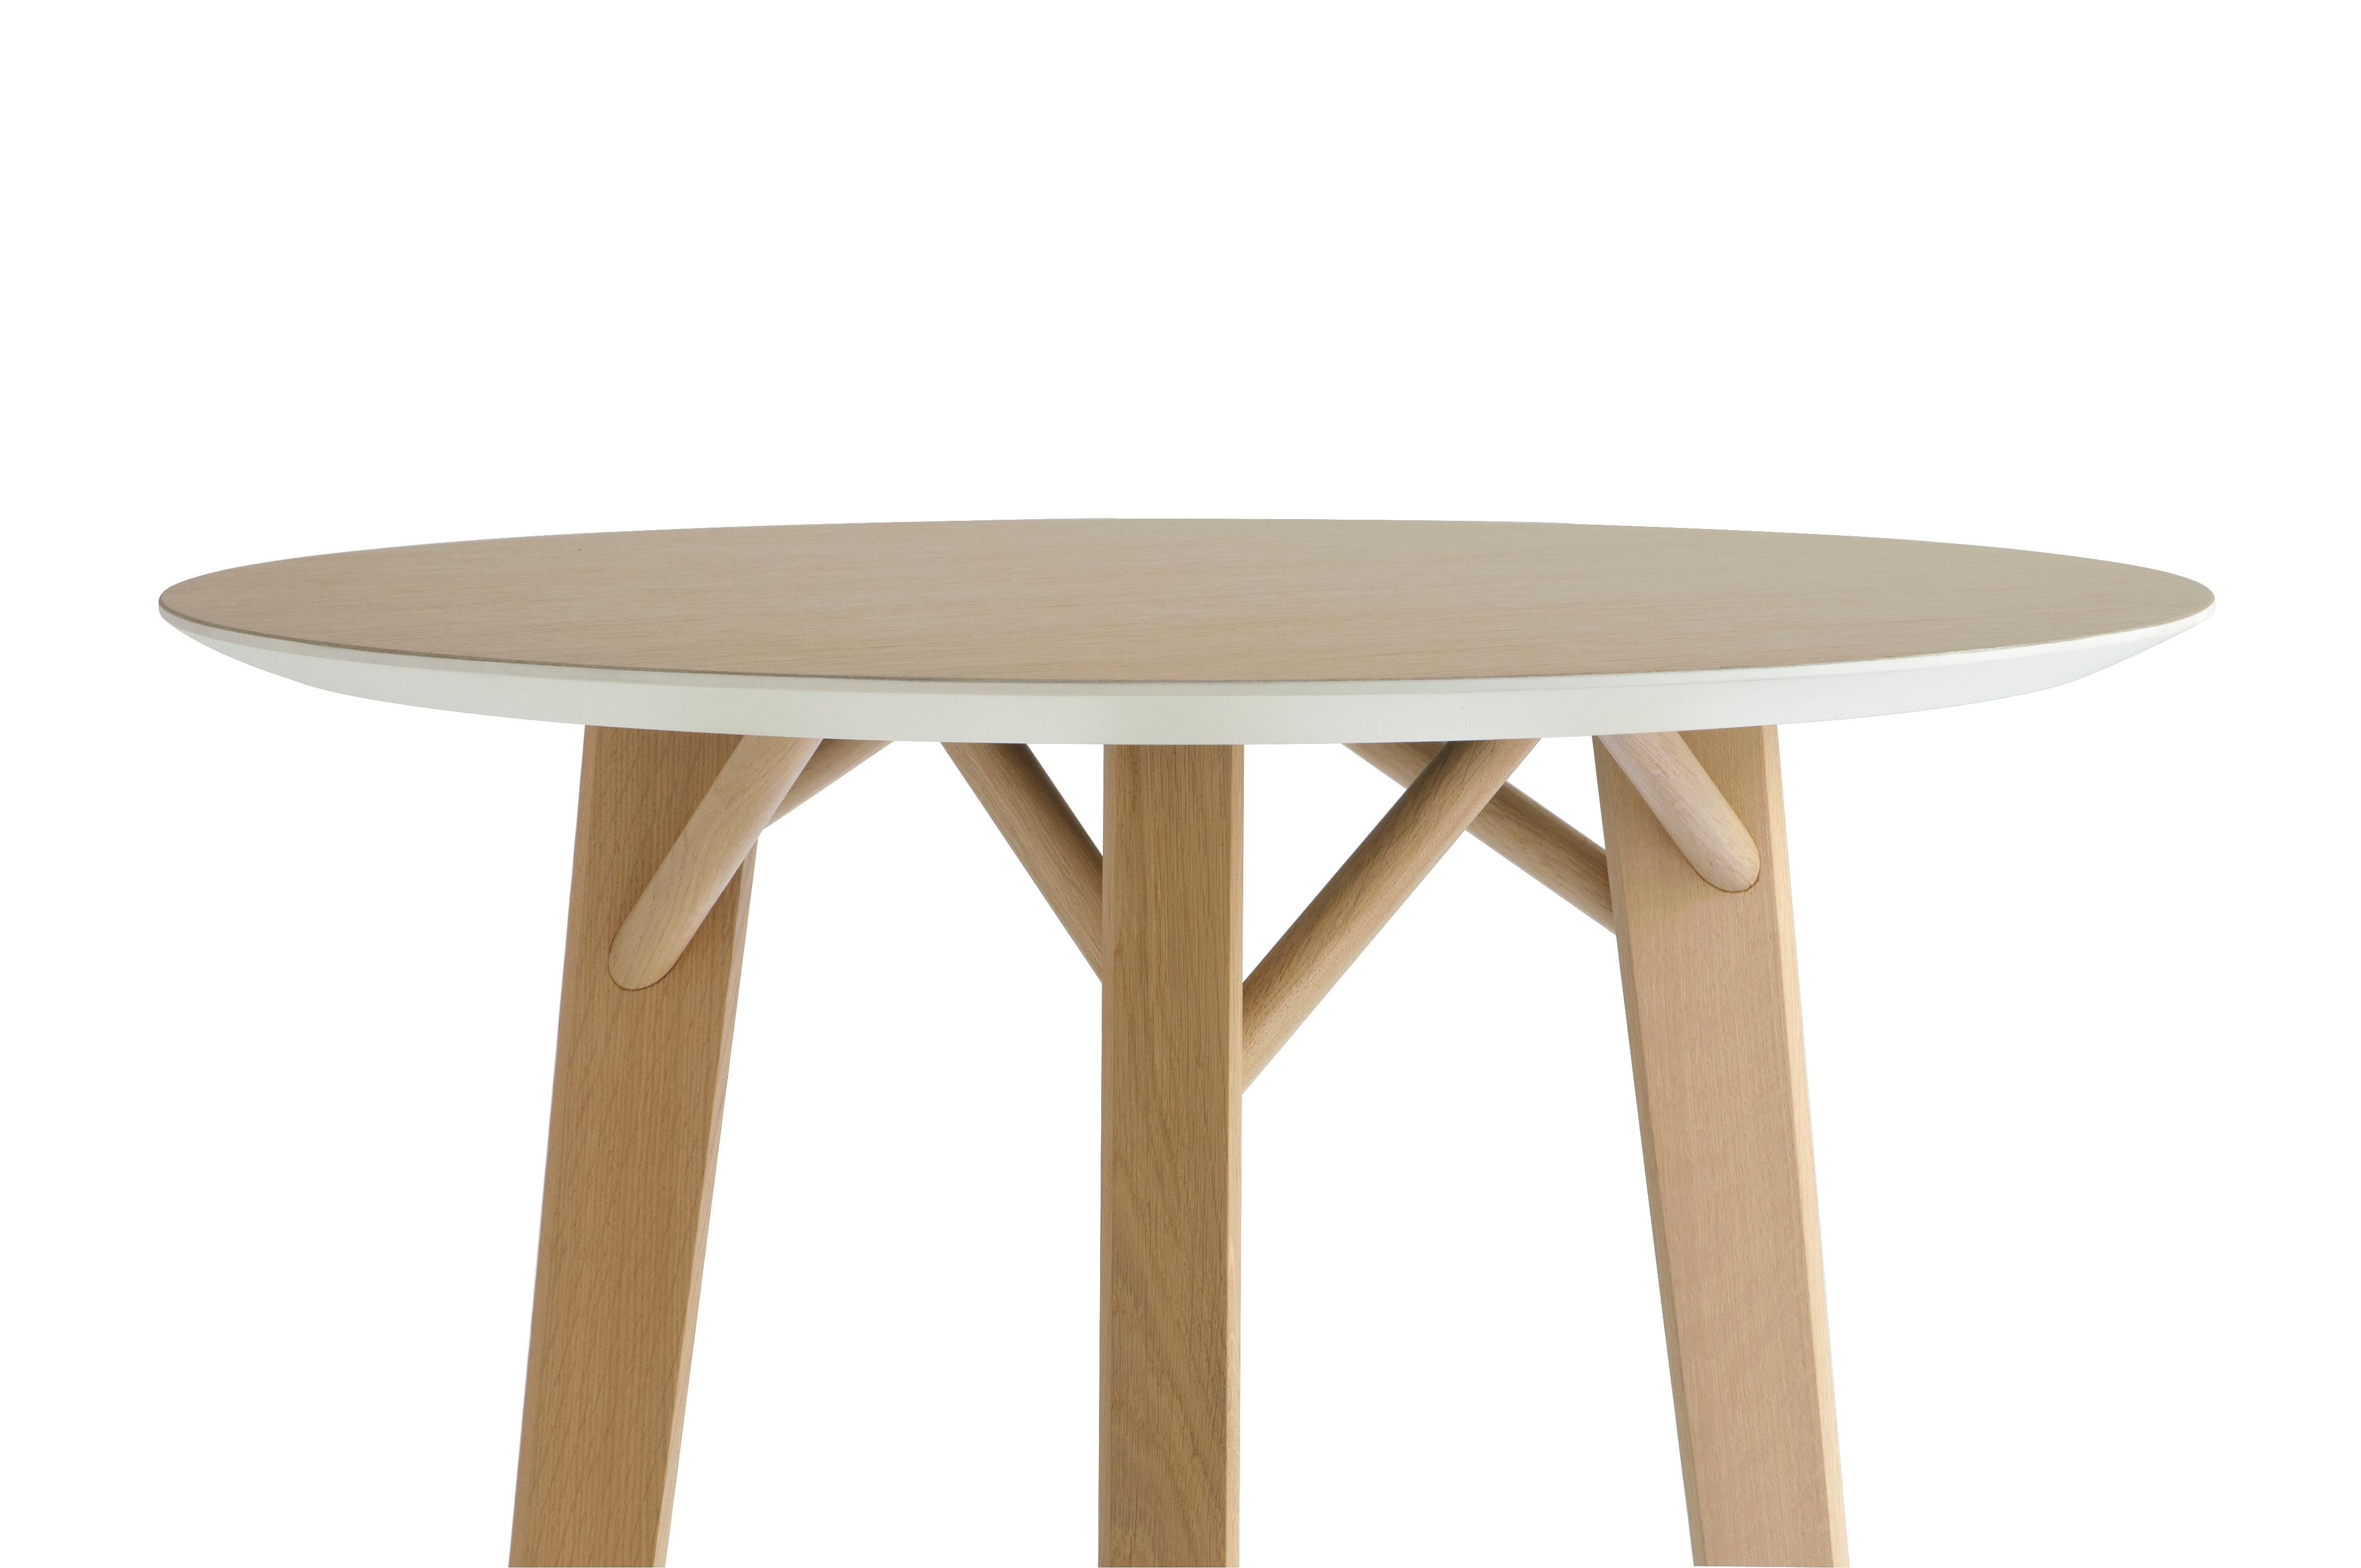 Les tables Tria en chêne sont caractérisées par des pieds en bois massif qui reprennent une section triangulaire comme celle des chaises Tria homonymes, évoquant les branches d'un arbre, puis sont assemblées sur une grande variété de plateaux de